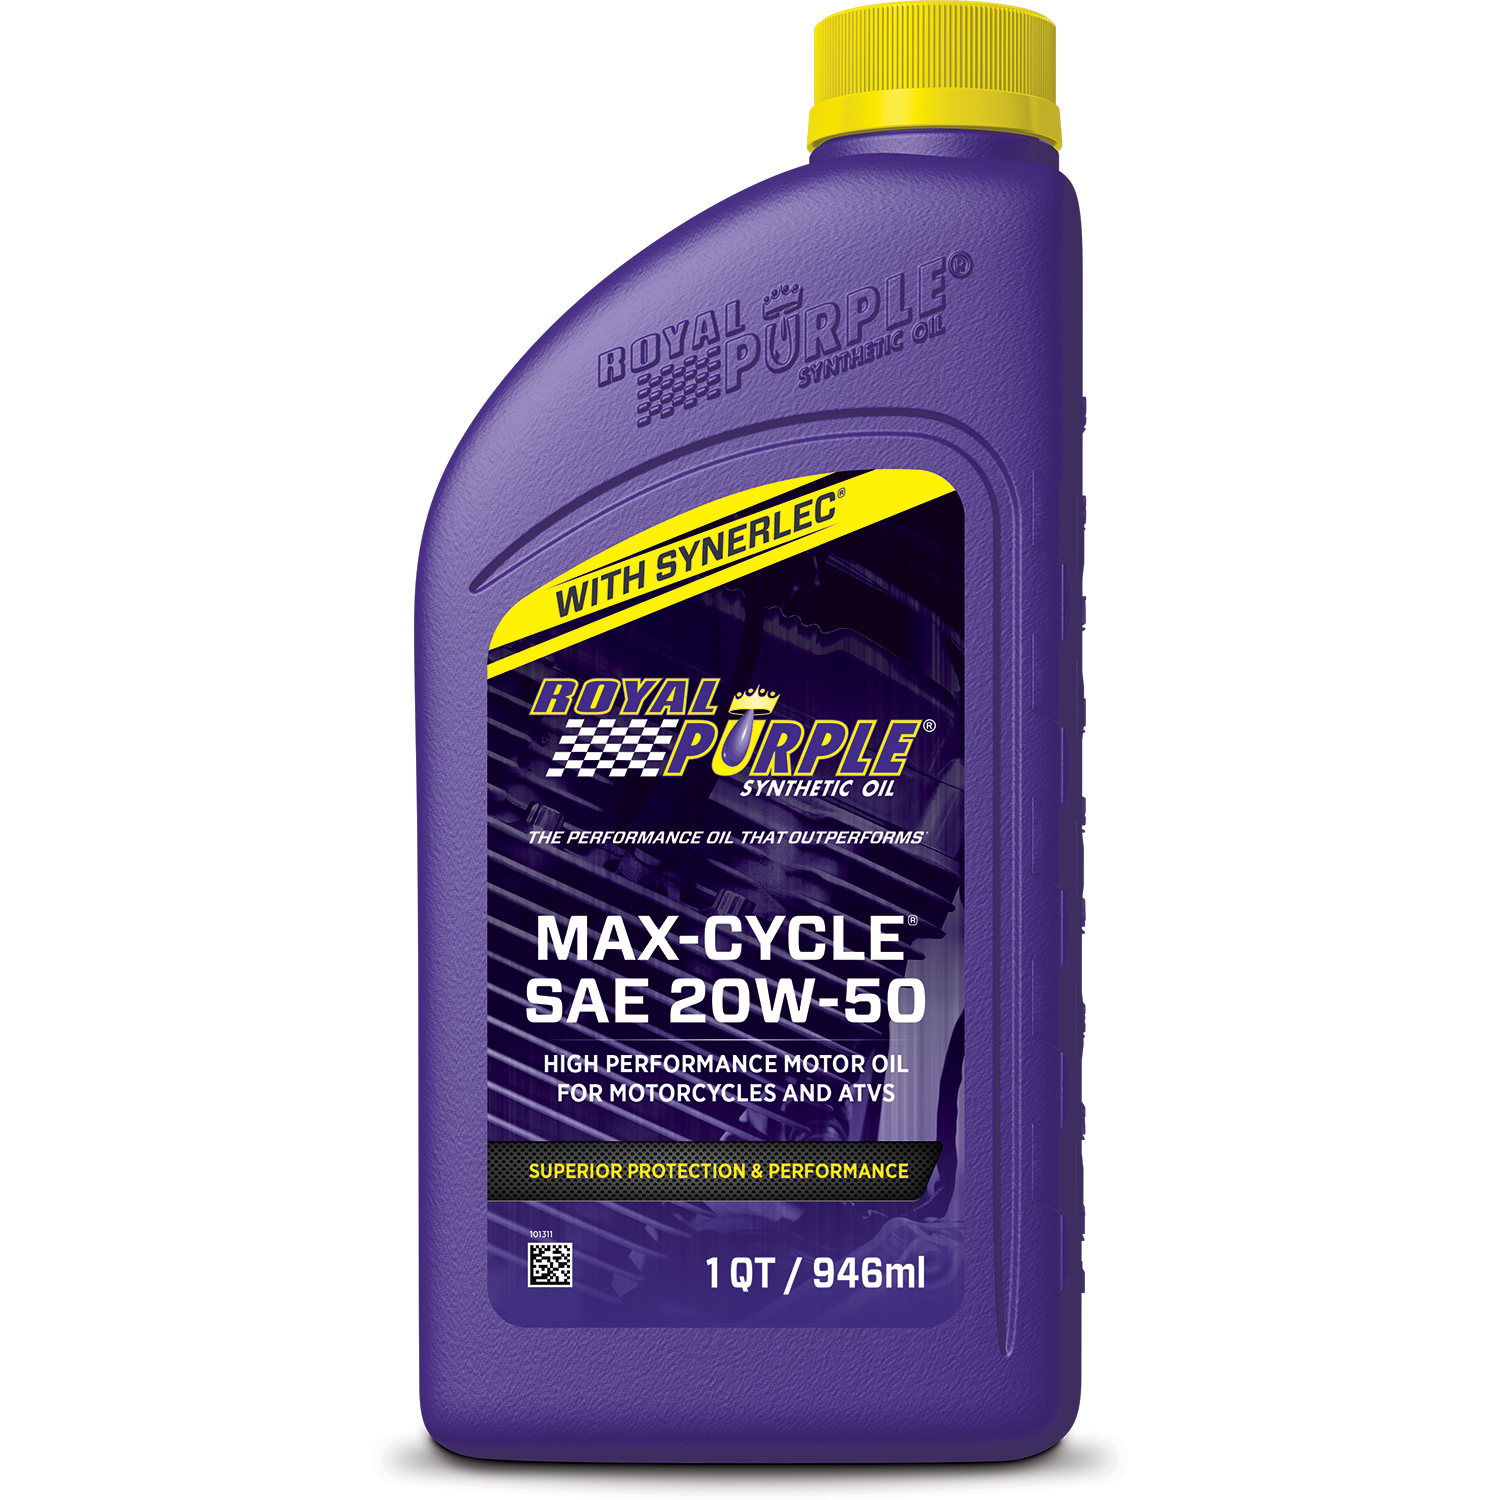 Royal_Purple_1QT_Max-Cycle_20W-50_01316.jpg